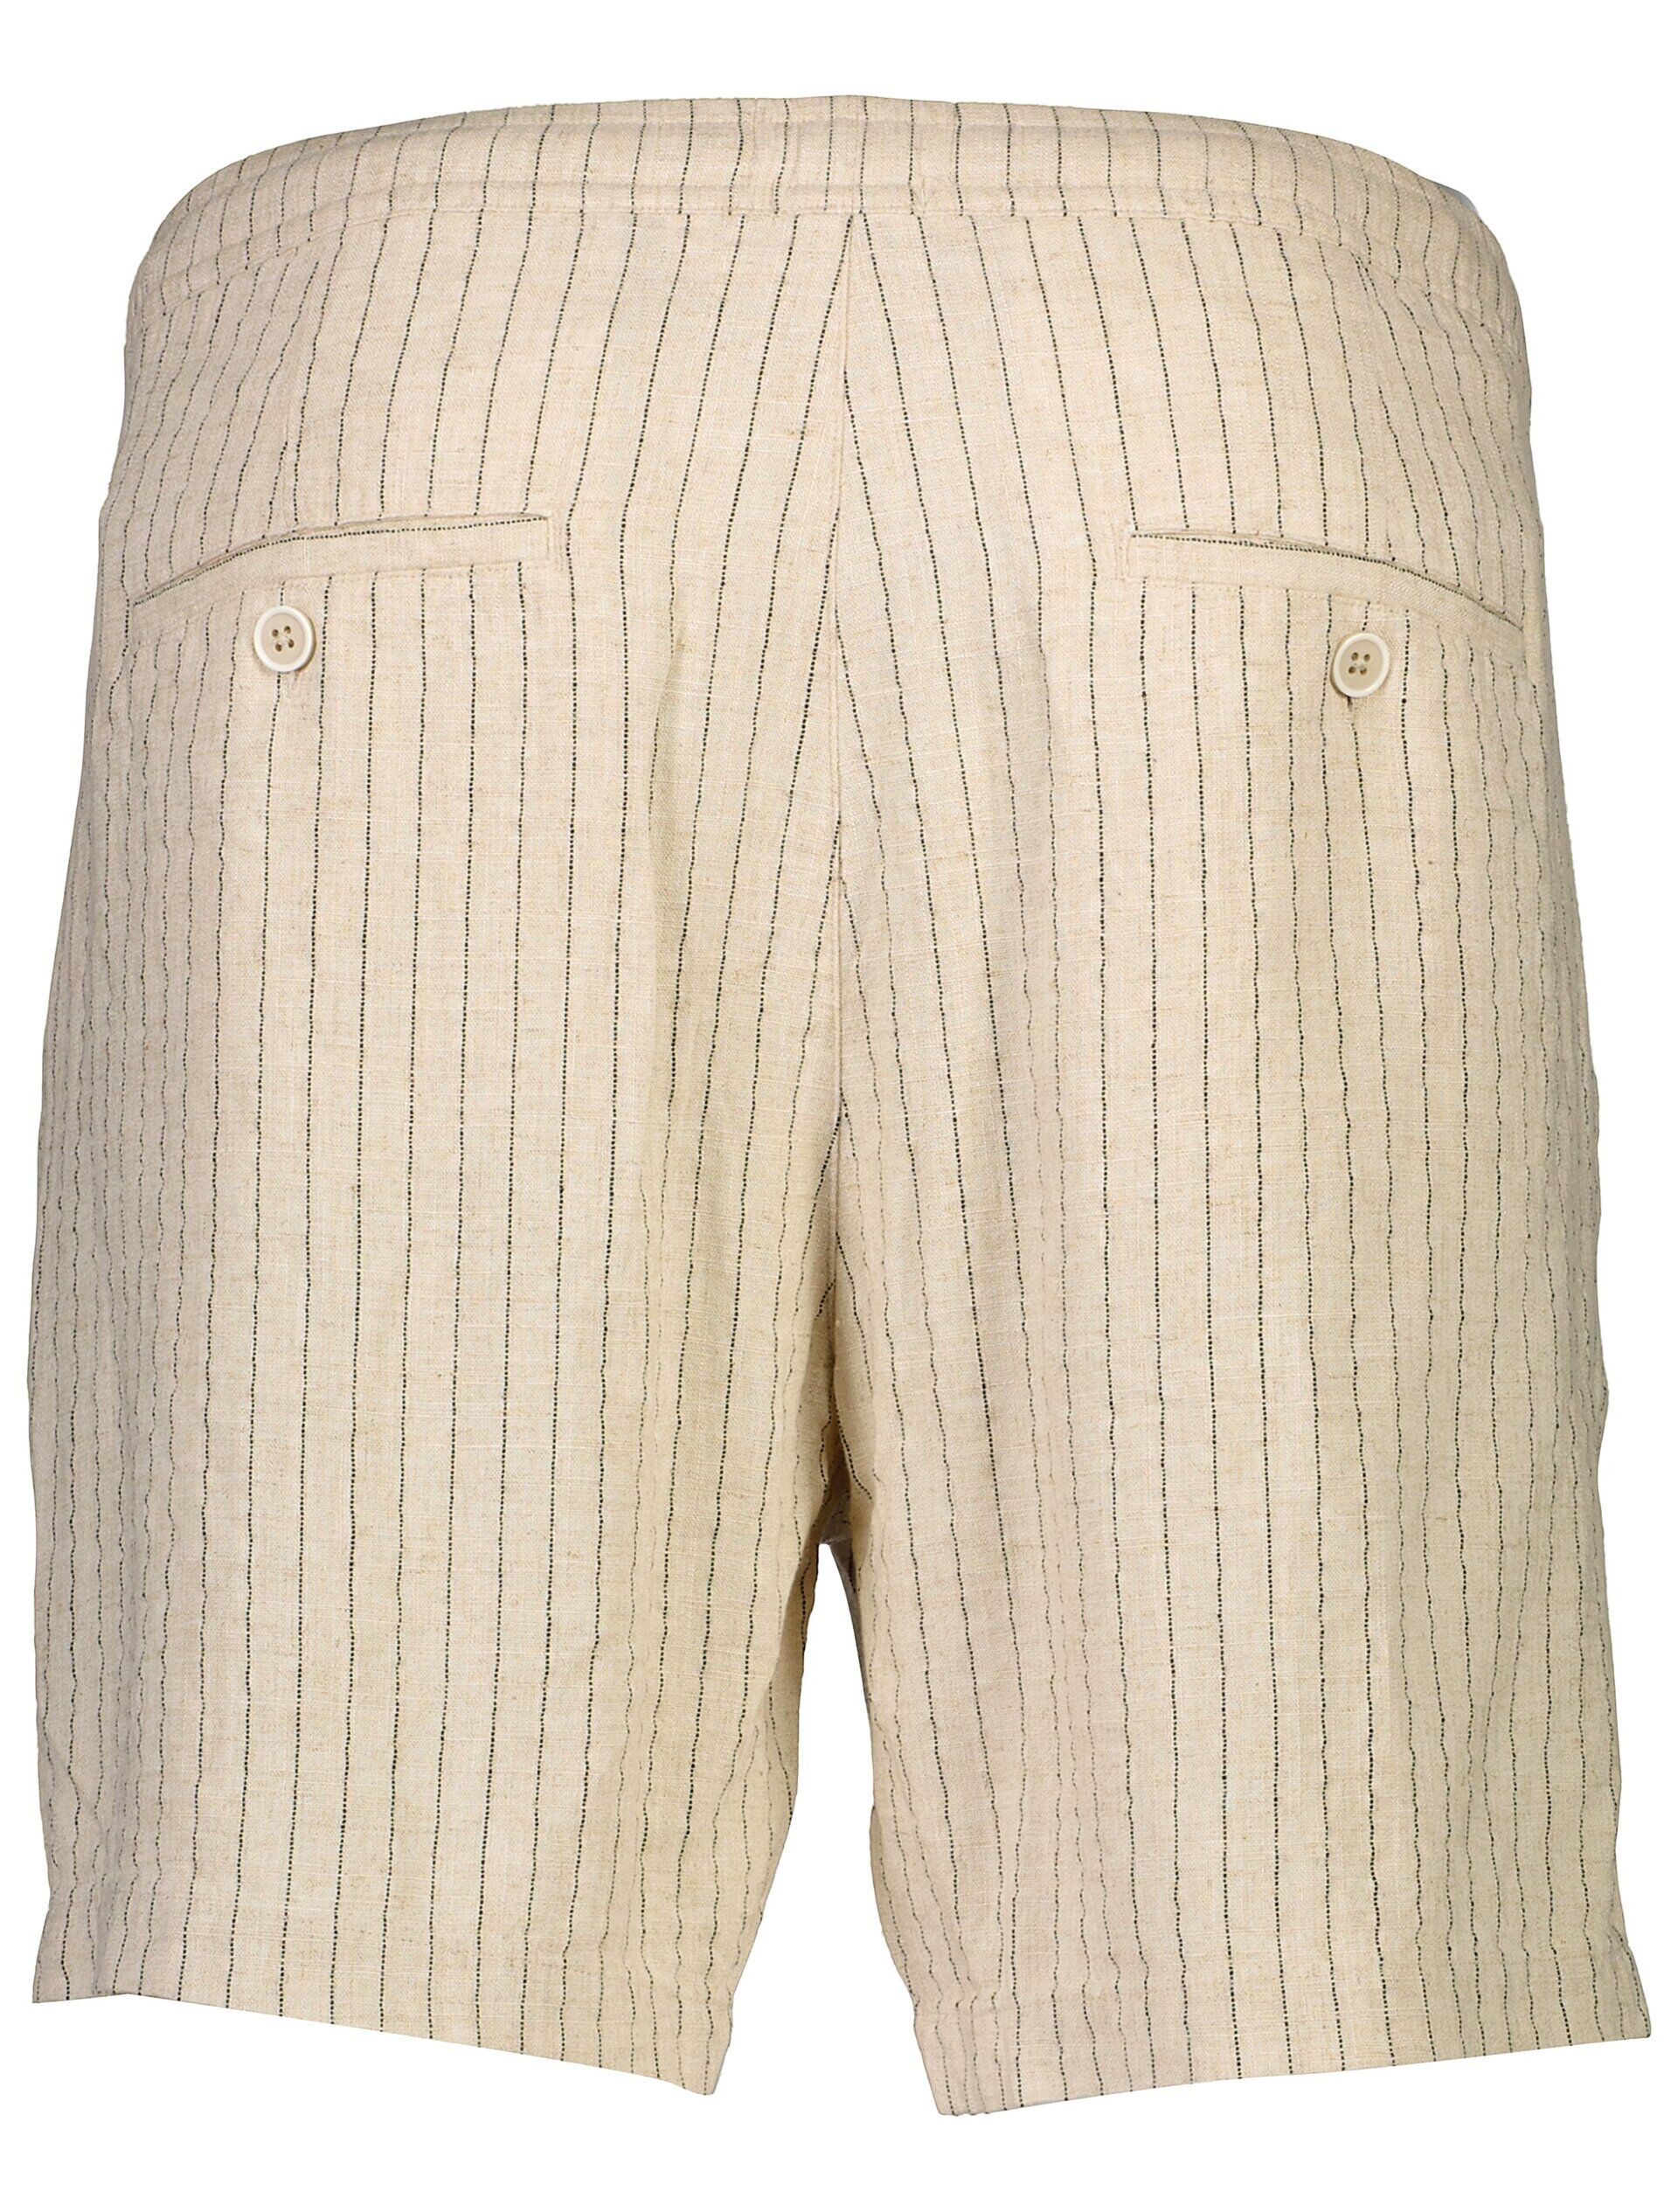 Linen shorts 30-505095